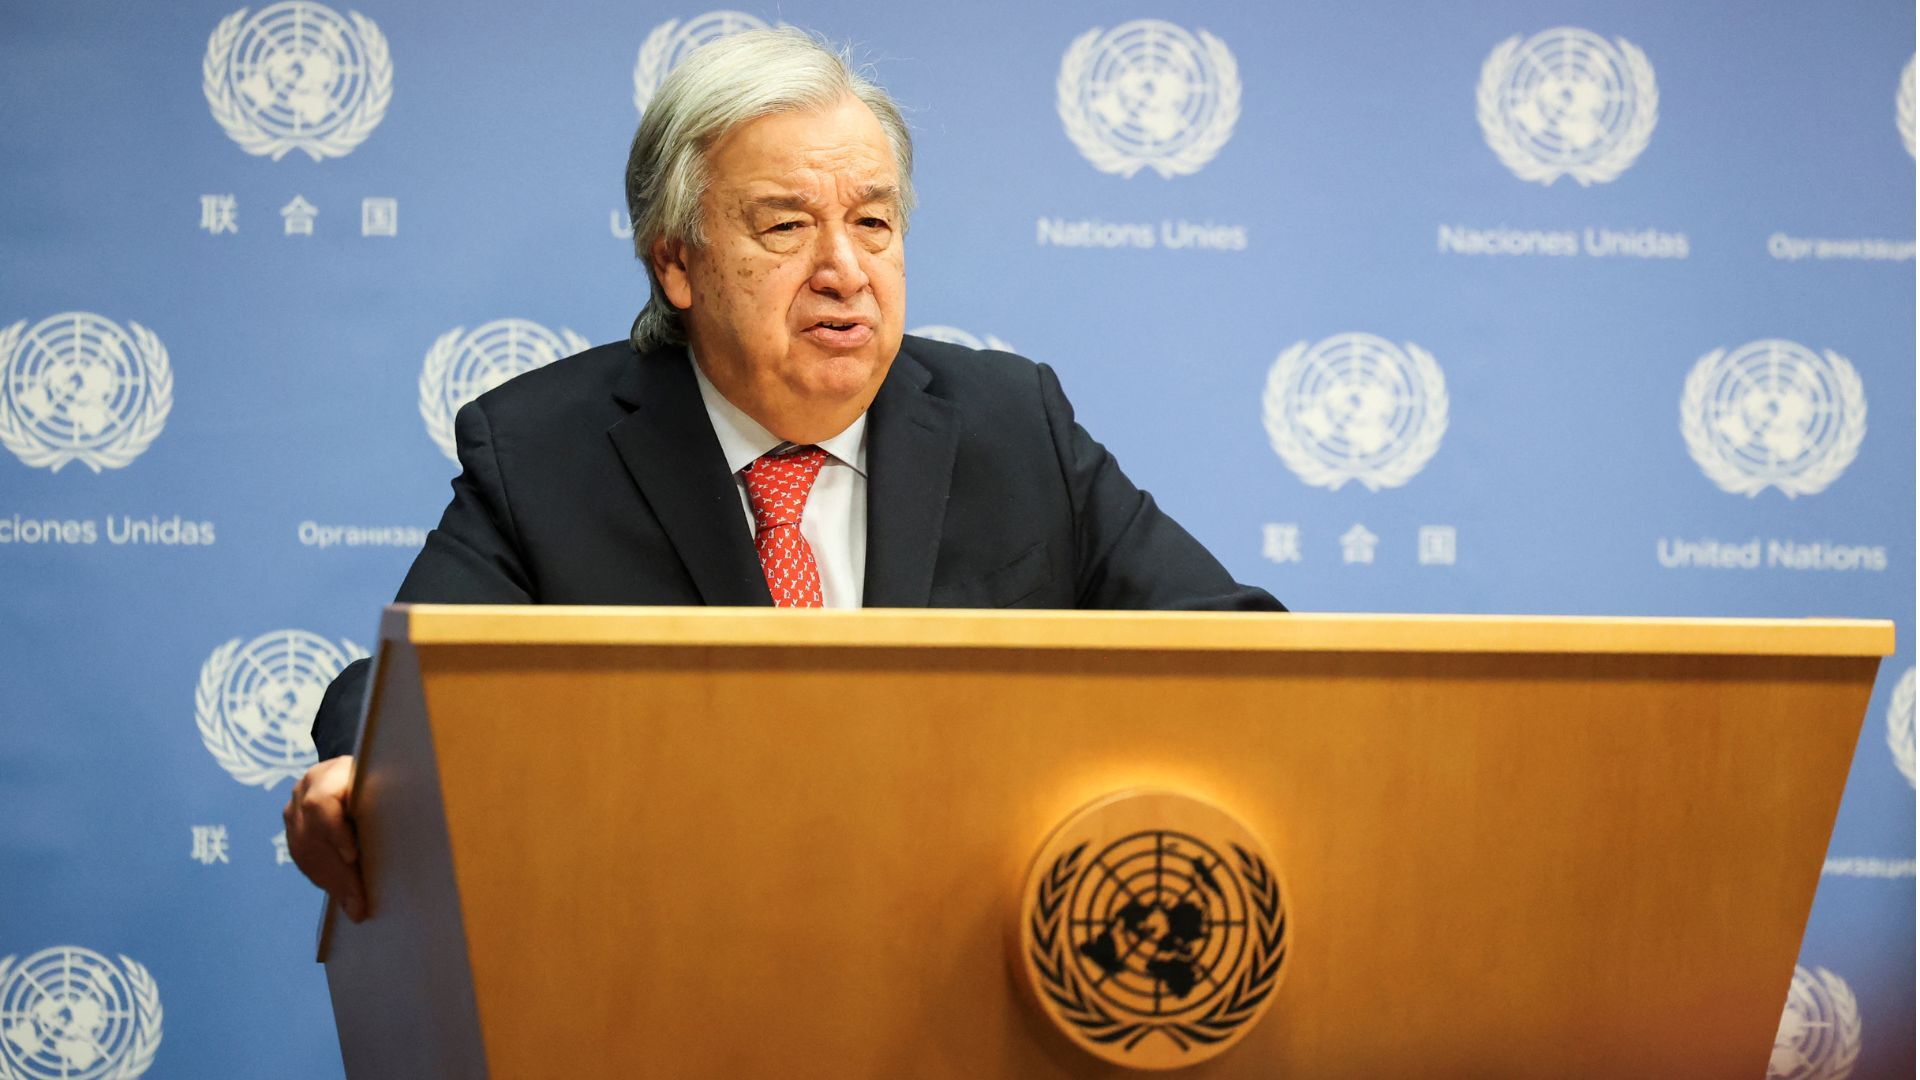 Il Segretario Generale delle Nazioni Unite attiva l’Articolo 99 riguardo a Gaza  Notizie sul conflitto israelo-palestinese